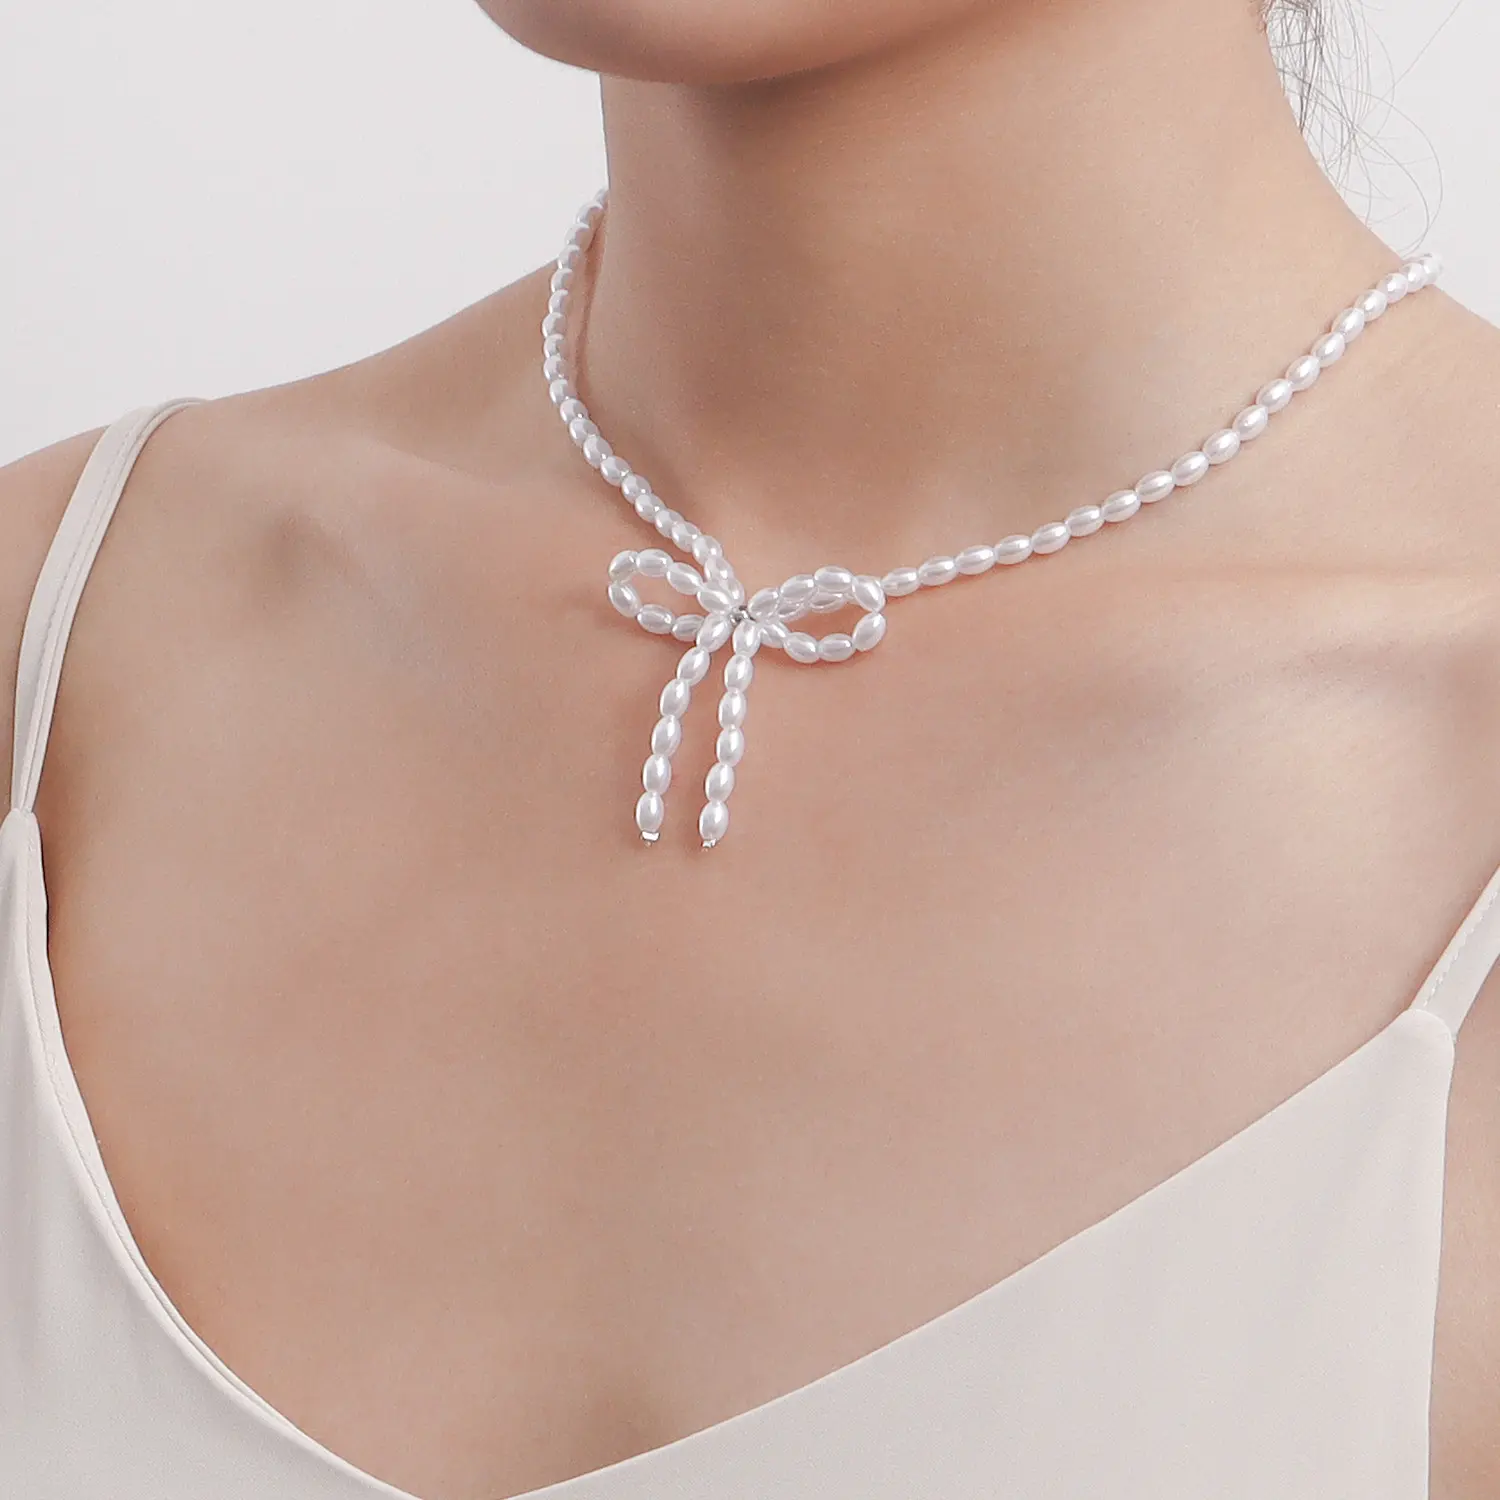 Nuova moda elegante stile regolabile con catena di perle con fiocco pendente collana girocollo di perle per gioielli da donna